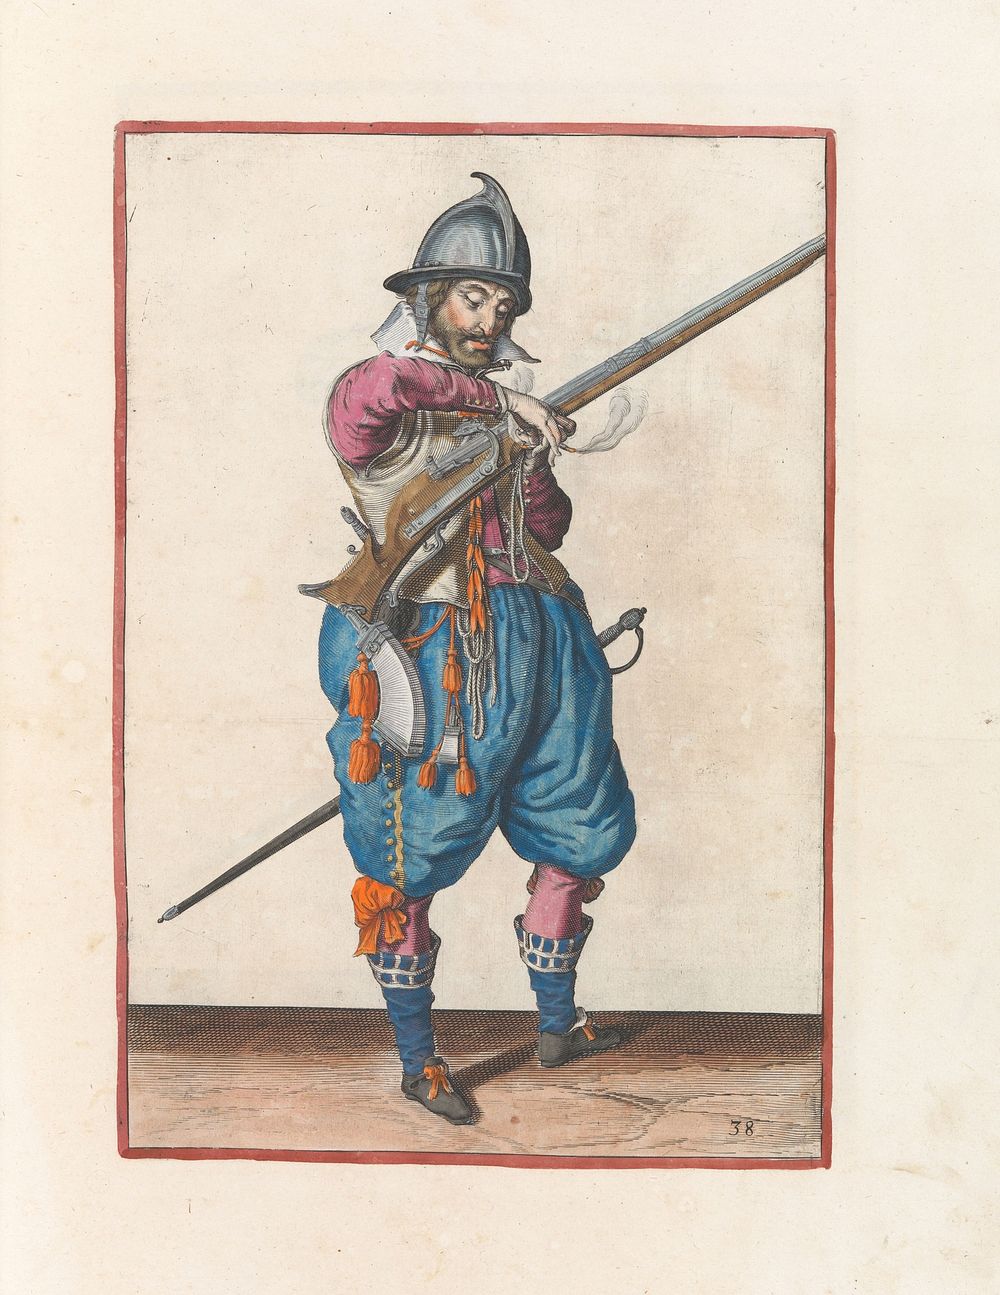 Soldaat op wacht met een roer die zijn lont pakt (c. 1597 - 1607) by Jacques de Gheyn II and Jacques de Gheyn II